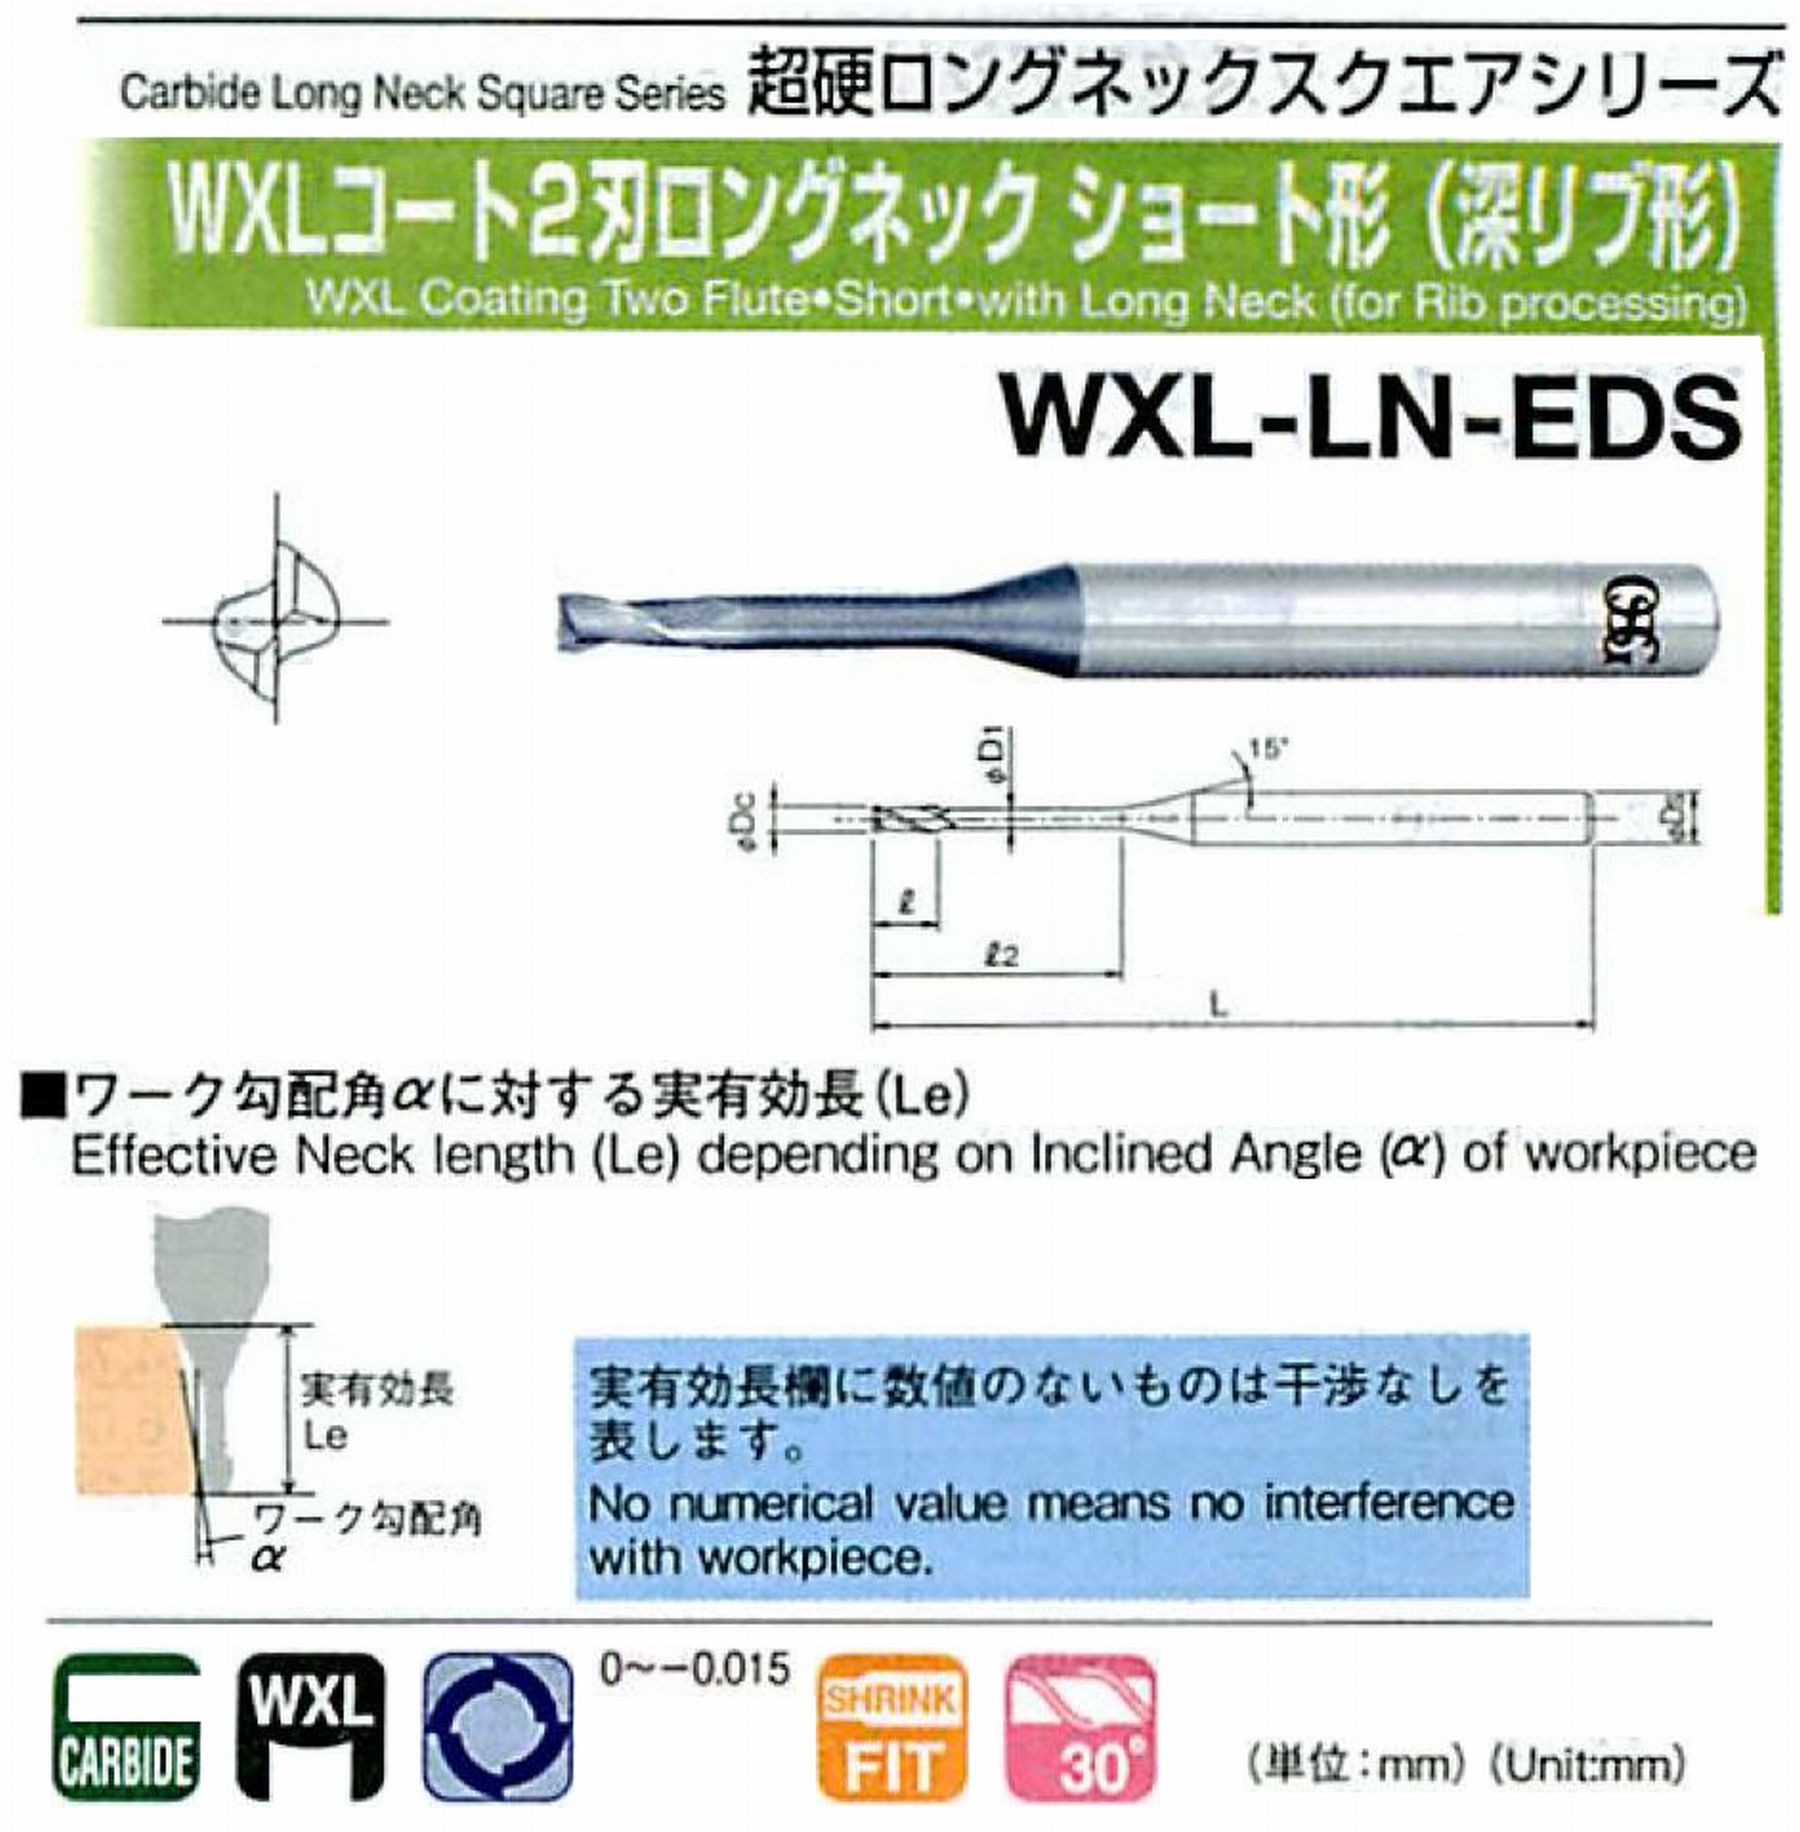 オーエスジー/OSG WXLコート2刃 ロングネックショート形(深リブ形) WXL-LN-EDS 外径×首下長1.2×12 全長45 刃長1.8 シャンク径4mm 首径1.15